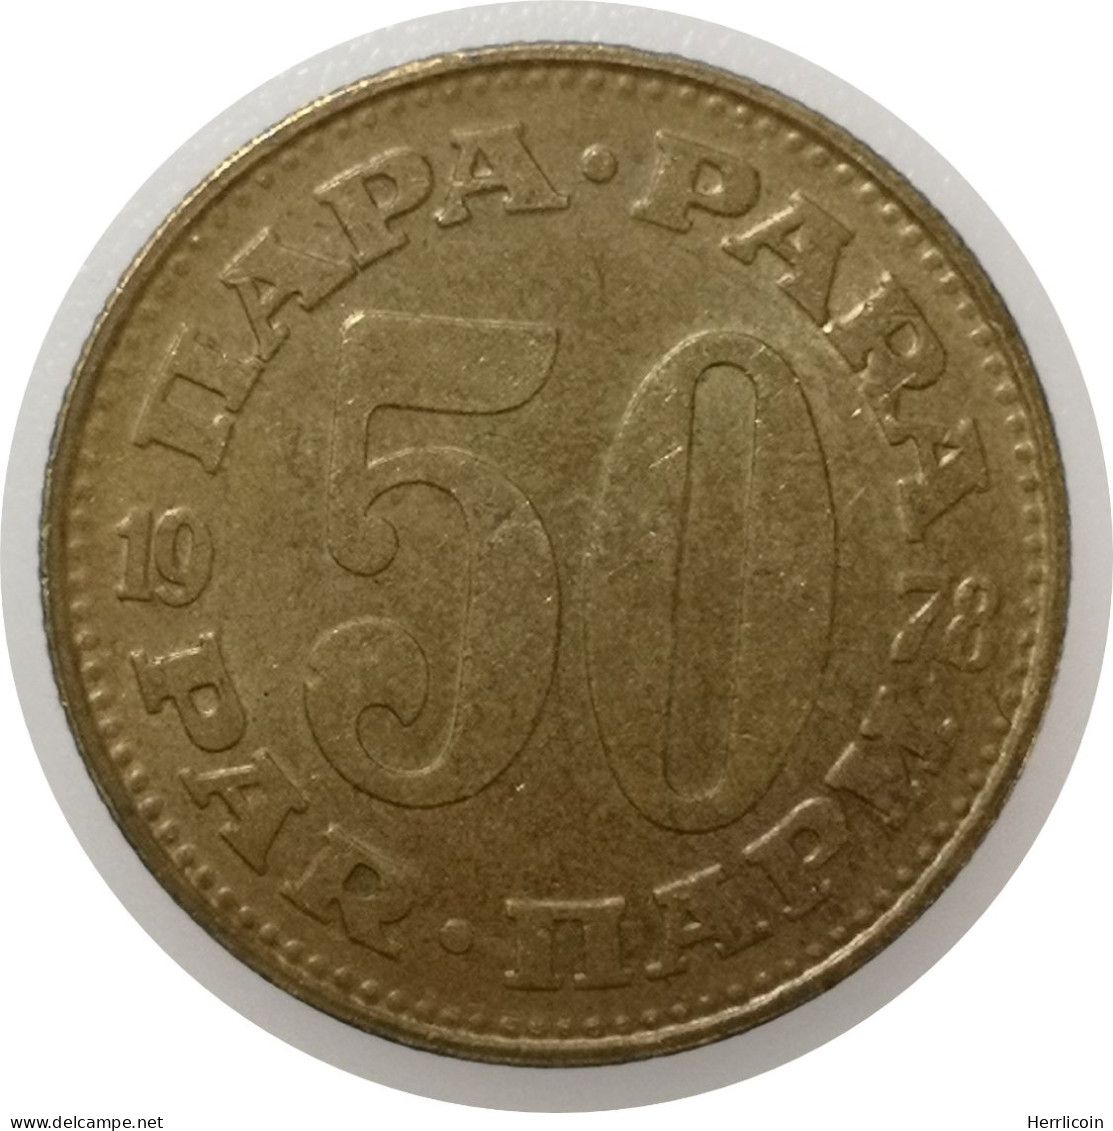 Monnaie Yougoslavie - 1978 - 50 Para - Jugoslawien